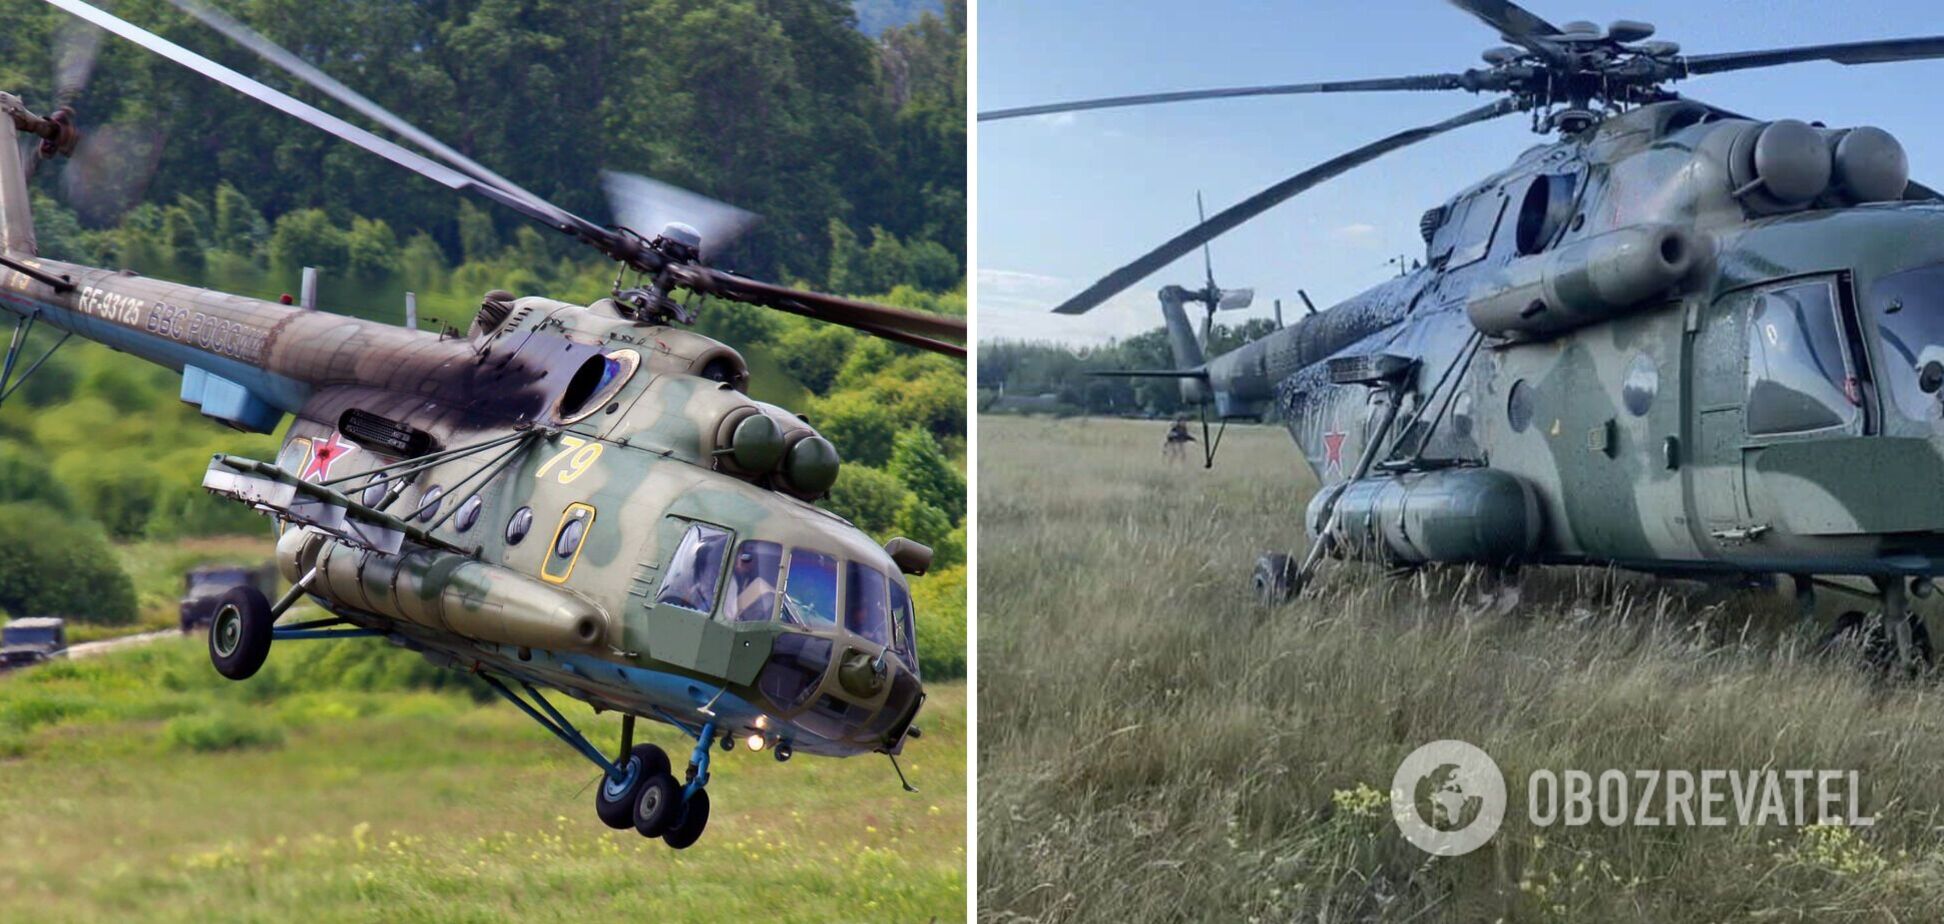 'Чим займається контррозвідка?': істерична реакція росіян на спецоперацію ГУР з вертольотом армії РФ. Фото